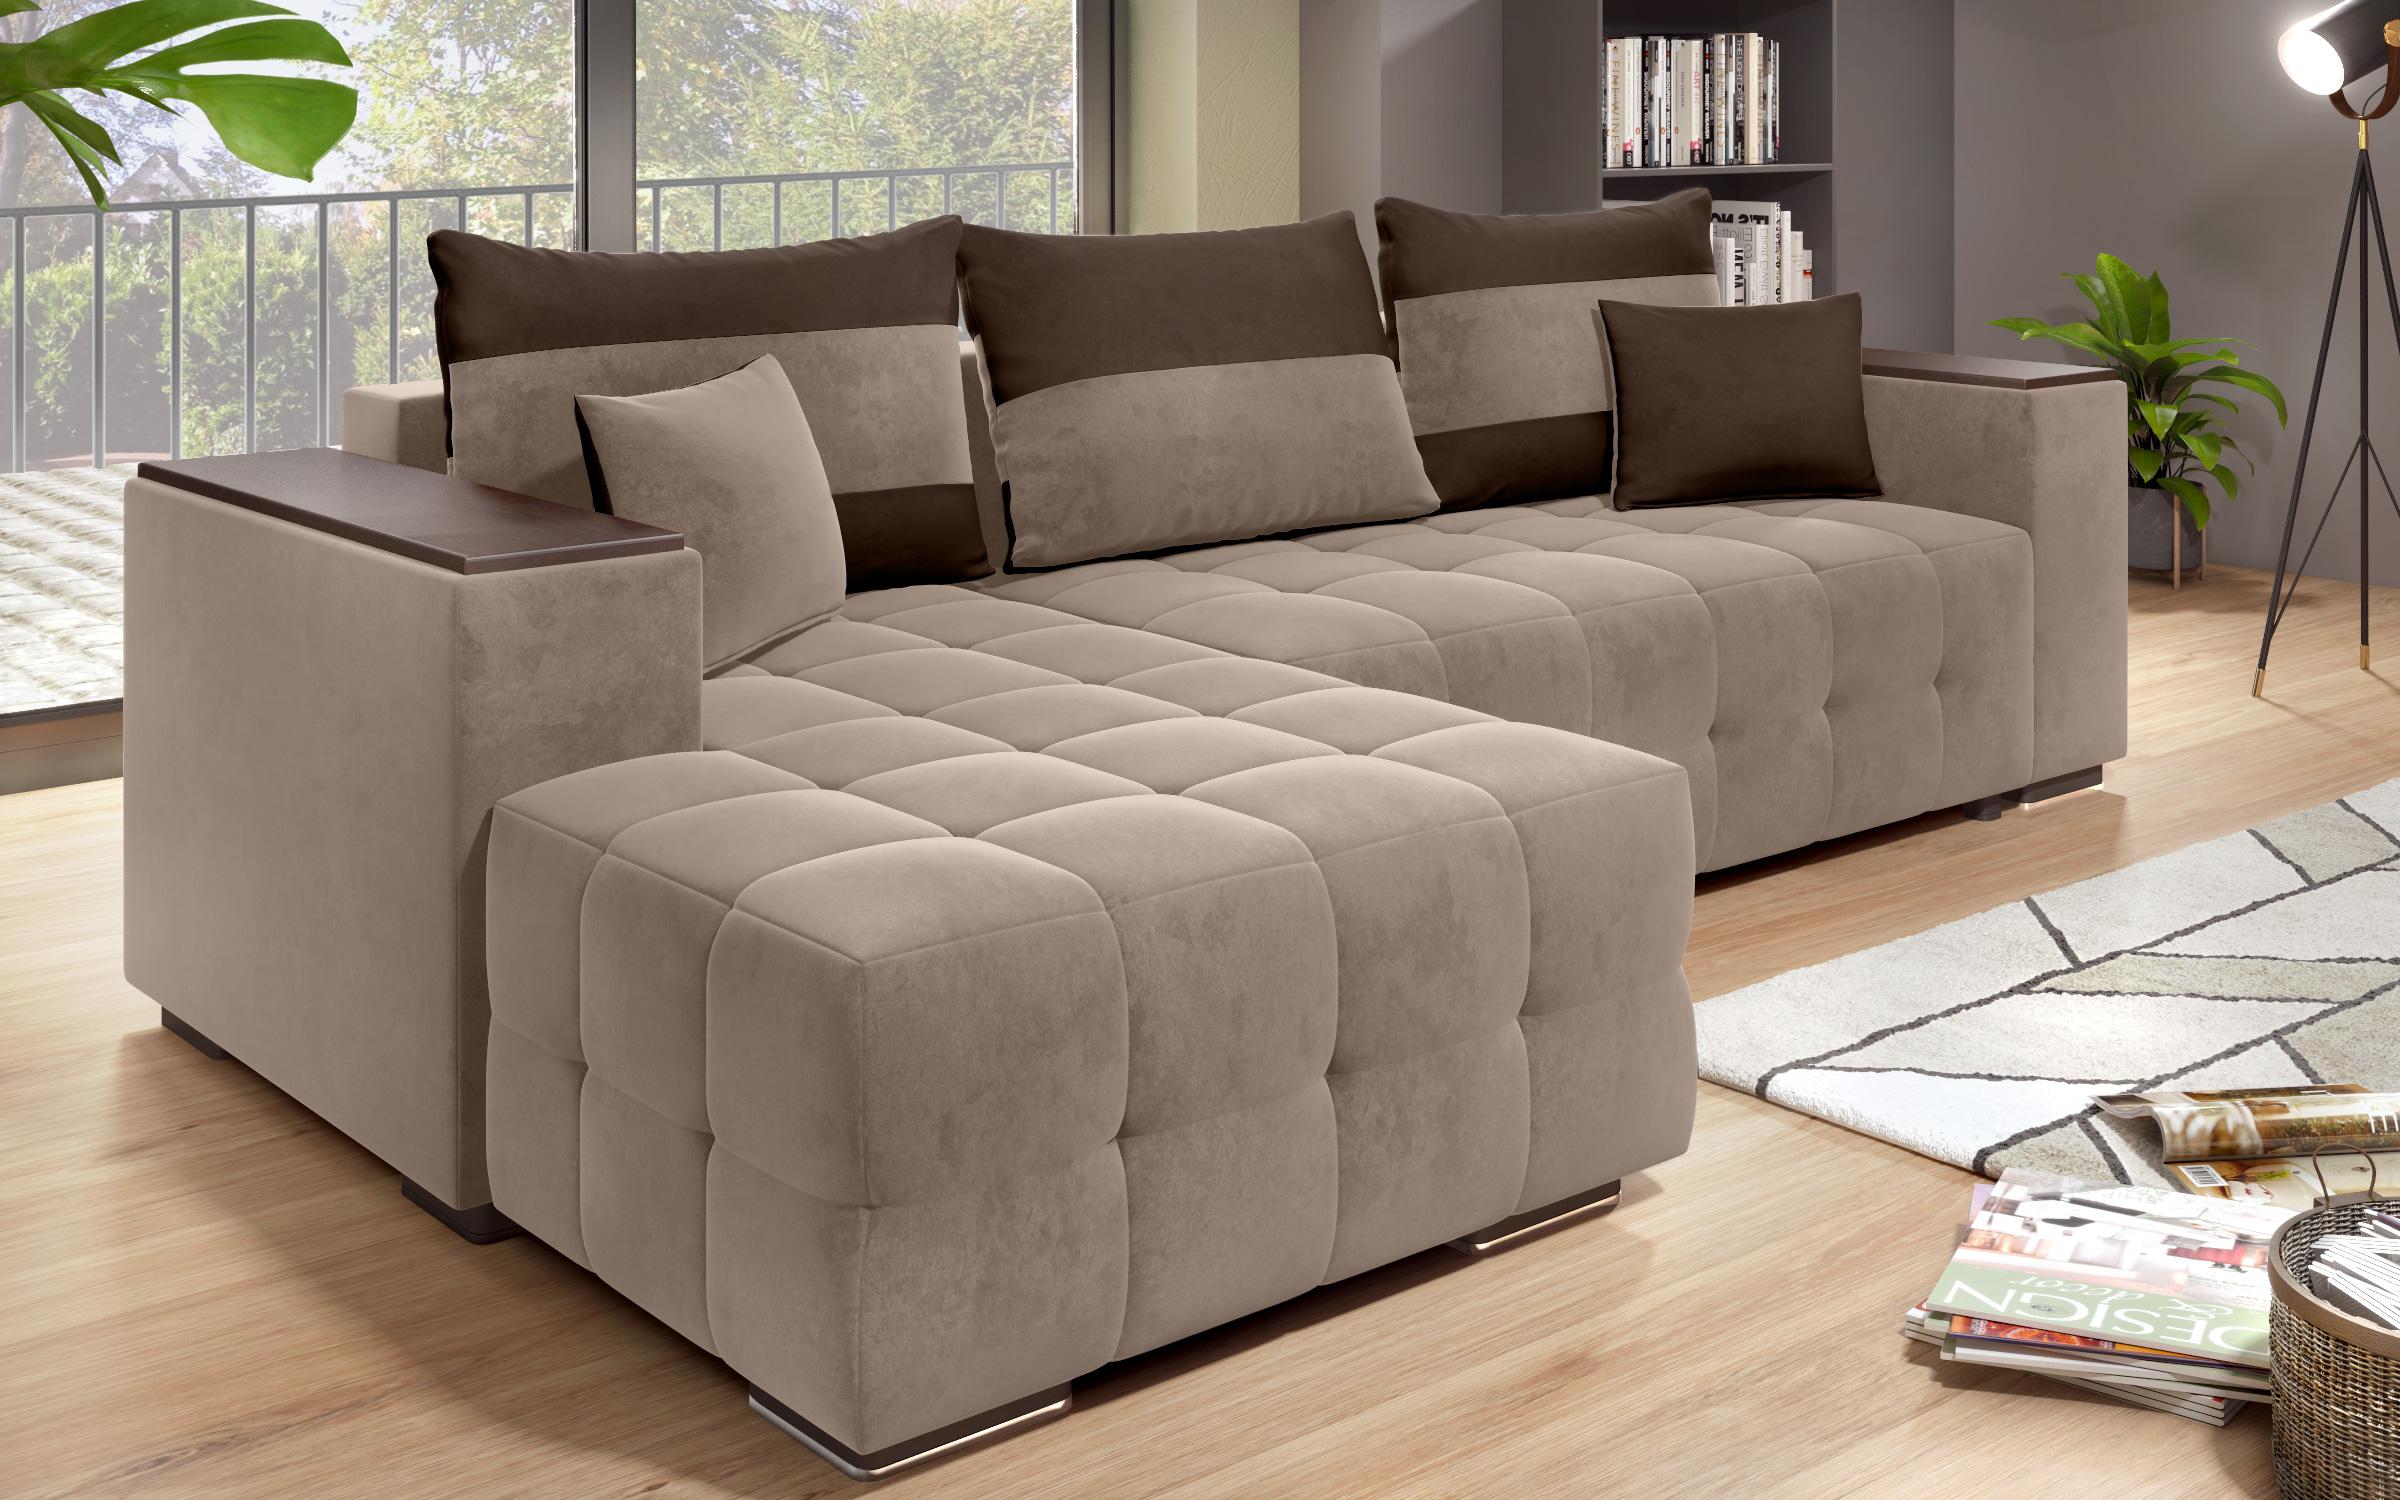 Γωνιακός καναπές - κρεβάτι με ανάκλιντρο και μπράτσο μίνι ραφιέρα Melvin S, σκούρο μπεζ + σκούρο καφέ  5